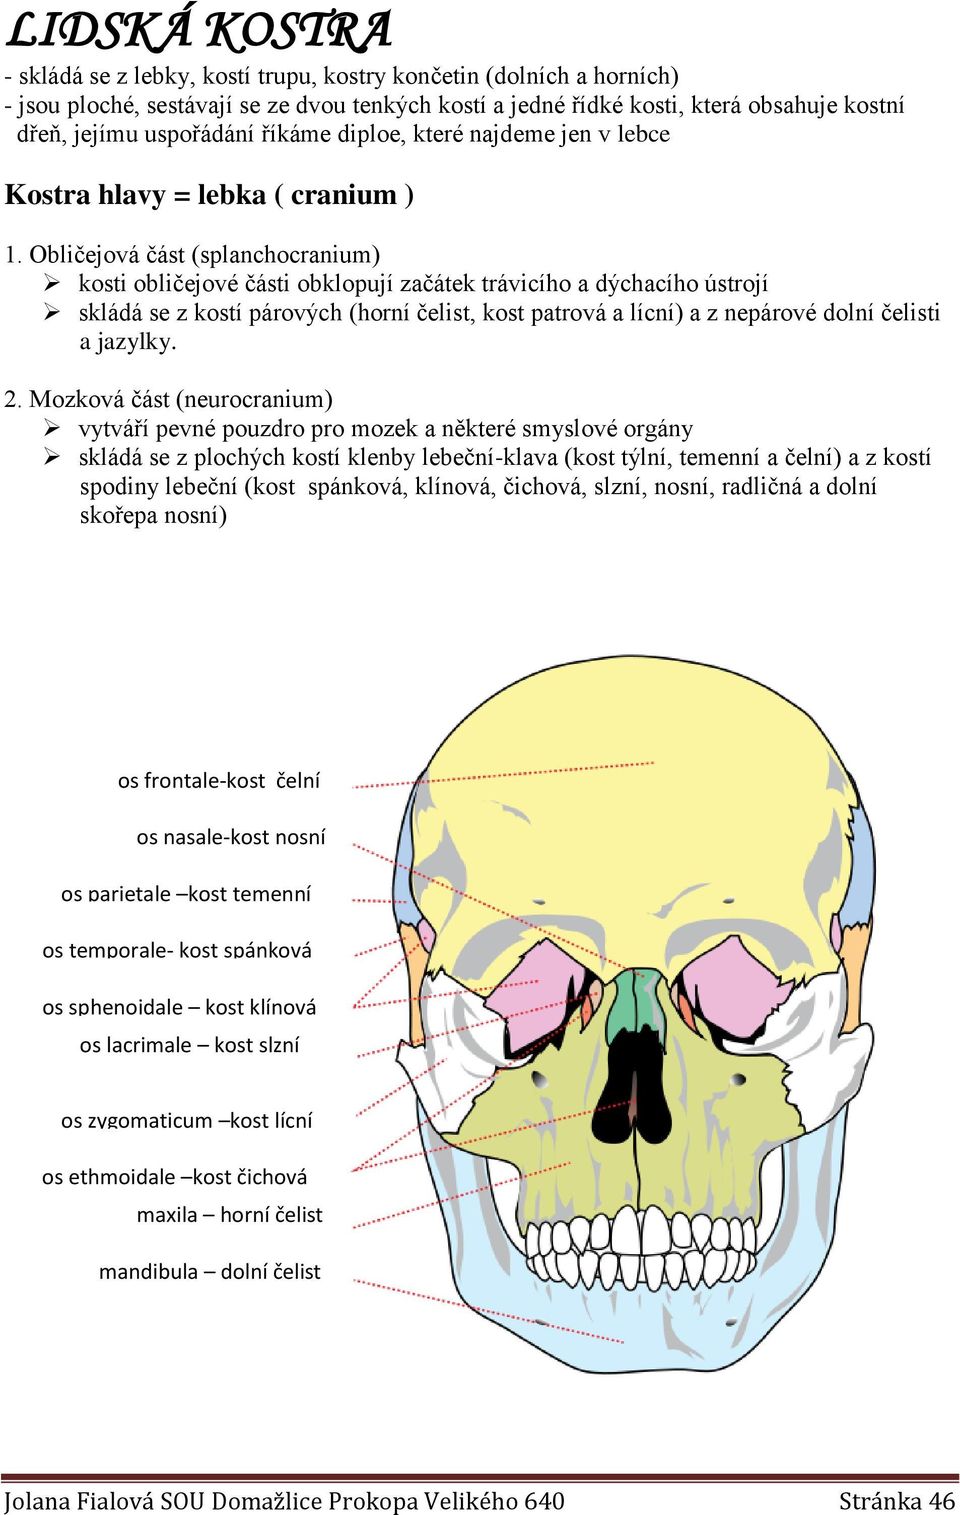 Obličejová část (splanchocranium) kosti obličejové části obklopují začátek trávicího a dýchacího ústrojí skládá se z kostí párových (horní čelist, kost patrová a lícní) a z nepárové dolní čelisti a